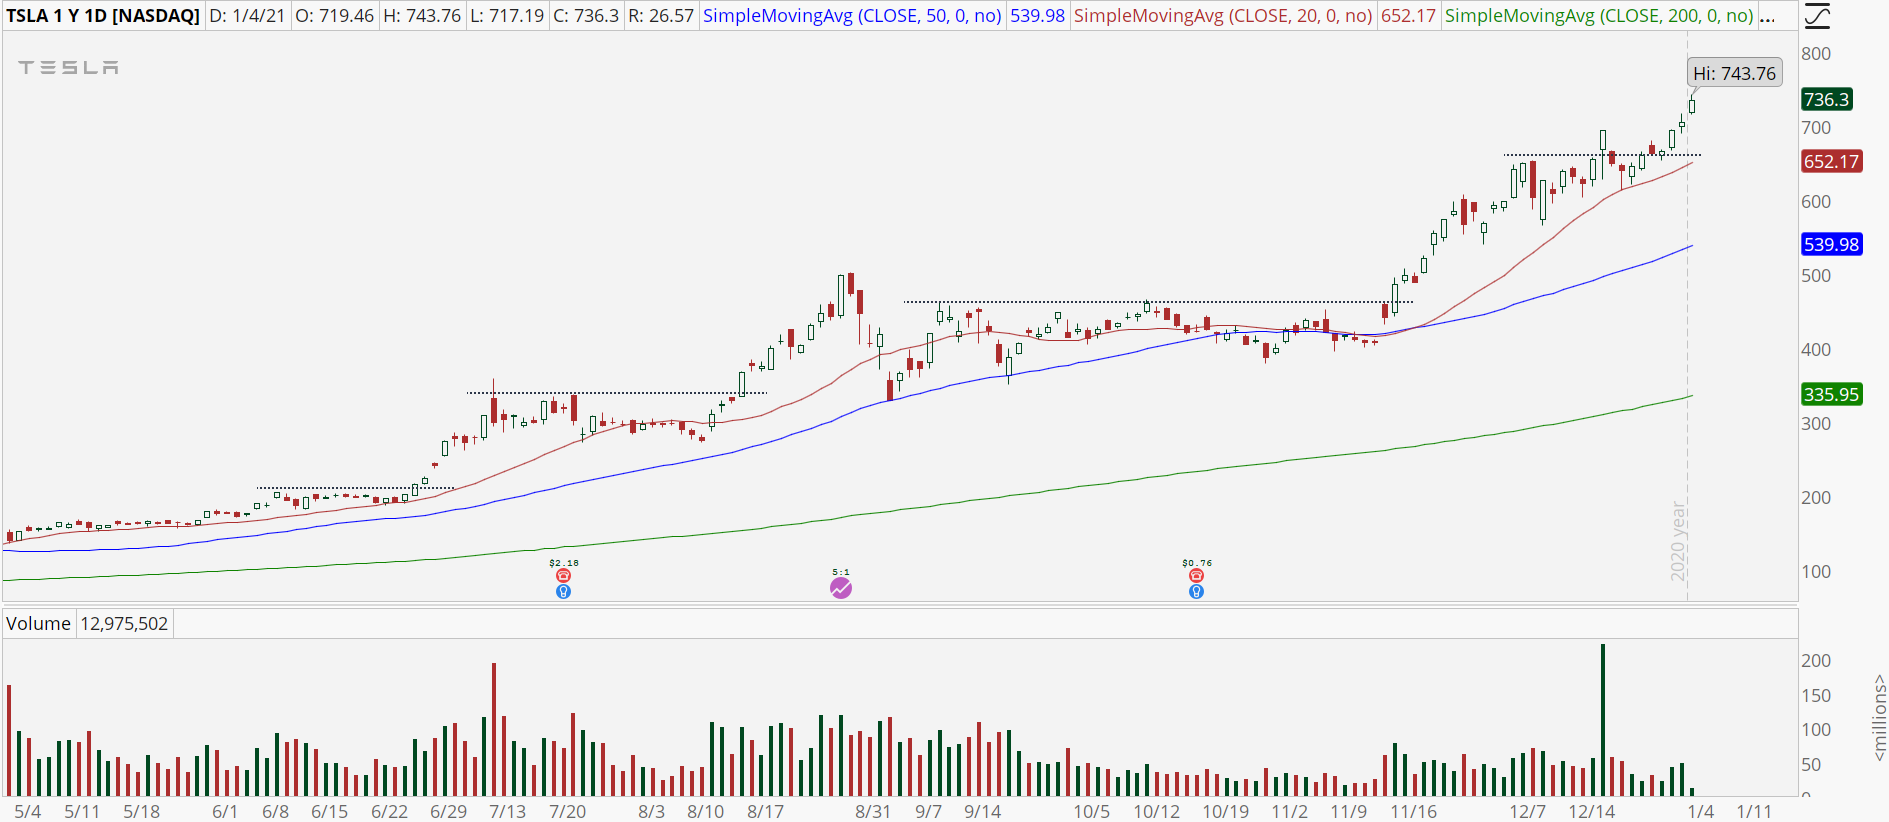 Tesla (TSLA) stock chart with powerful uptrend